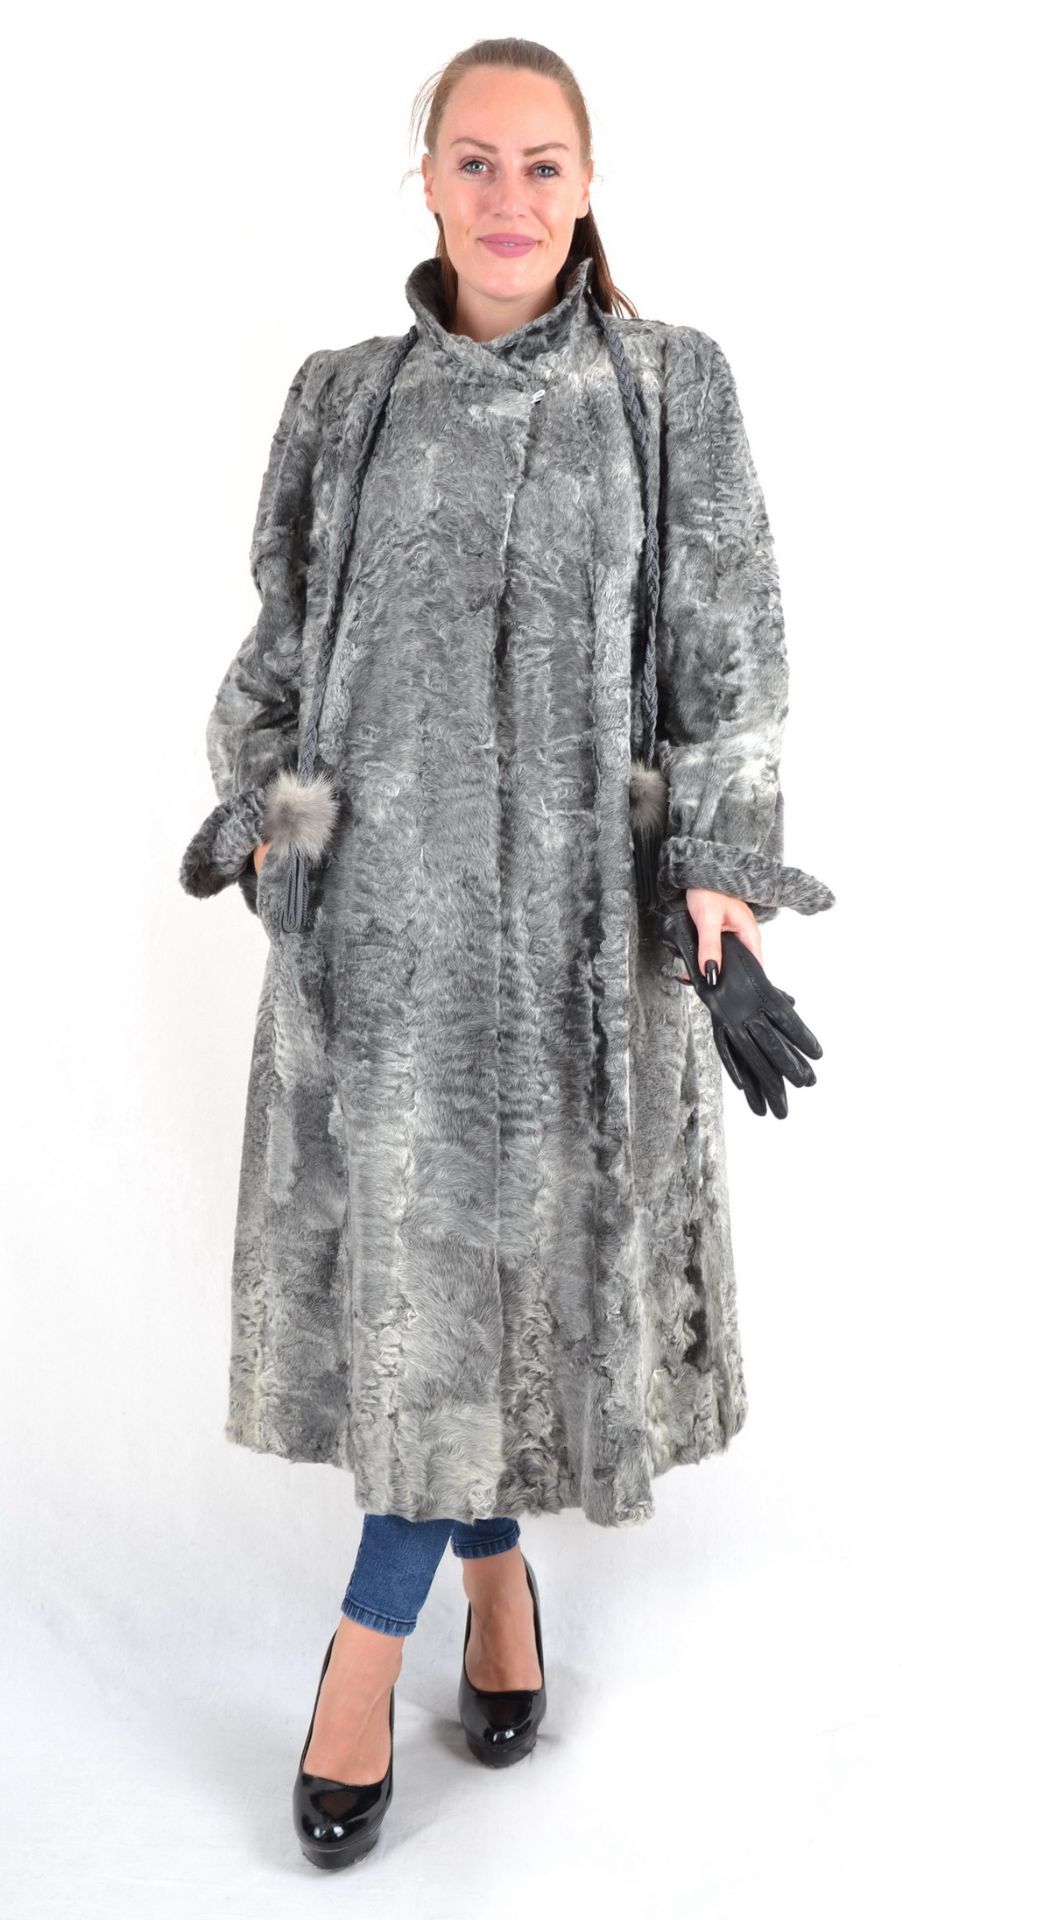 Persianer Swakara Pelzmantel in grau Gr. 48, Persian Swakara fur coat size 48 - Image 2 of 9